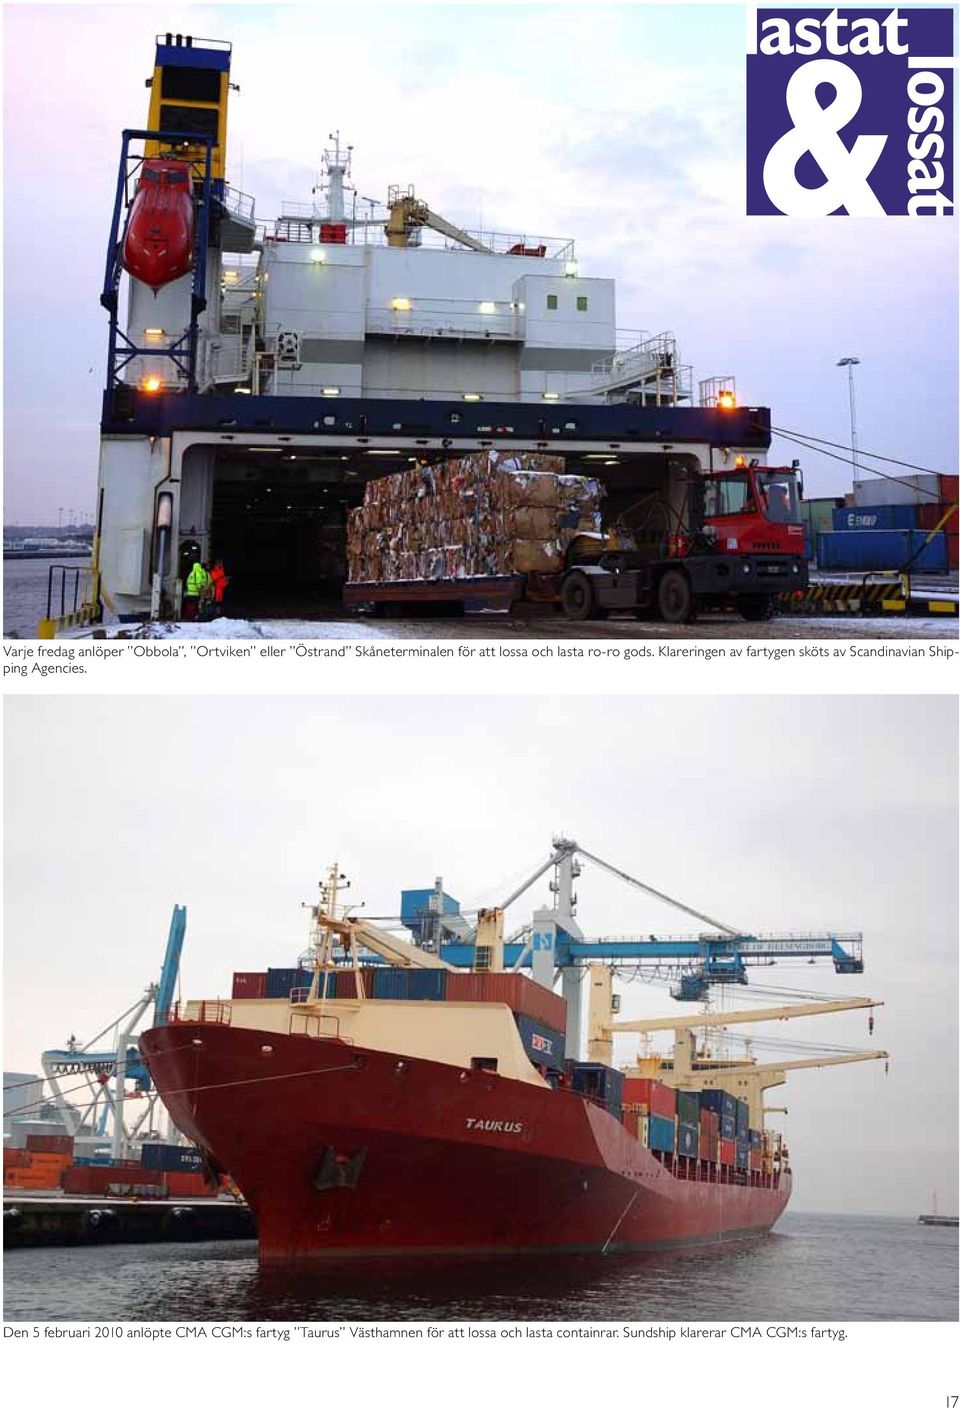 Klareringen av fartygen sköts av Scandinavian Shipping Agencies.